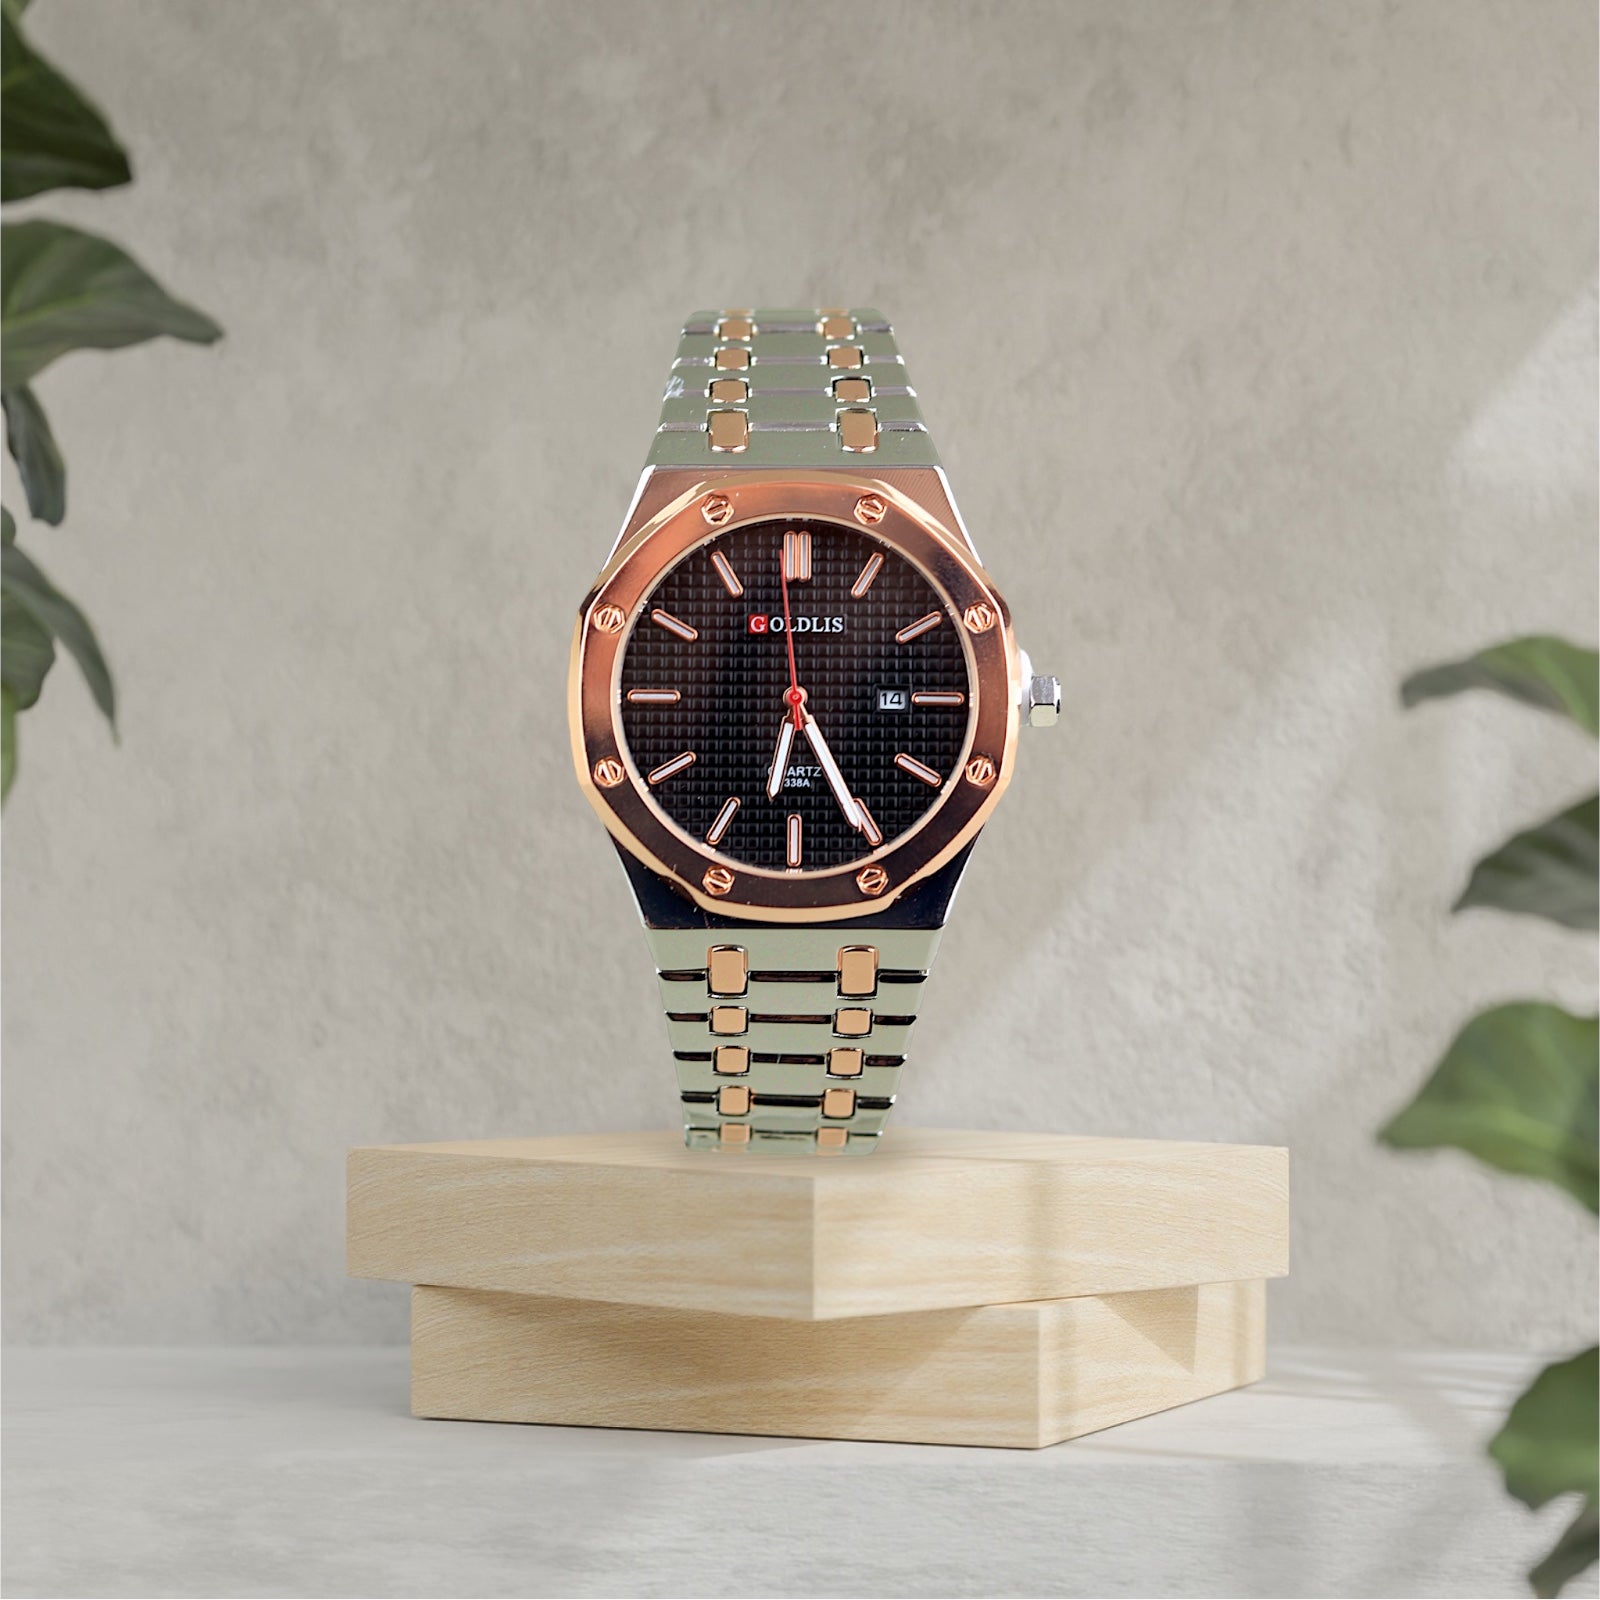 Men's Business Watch Automatic Date Quartz Watch - Black